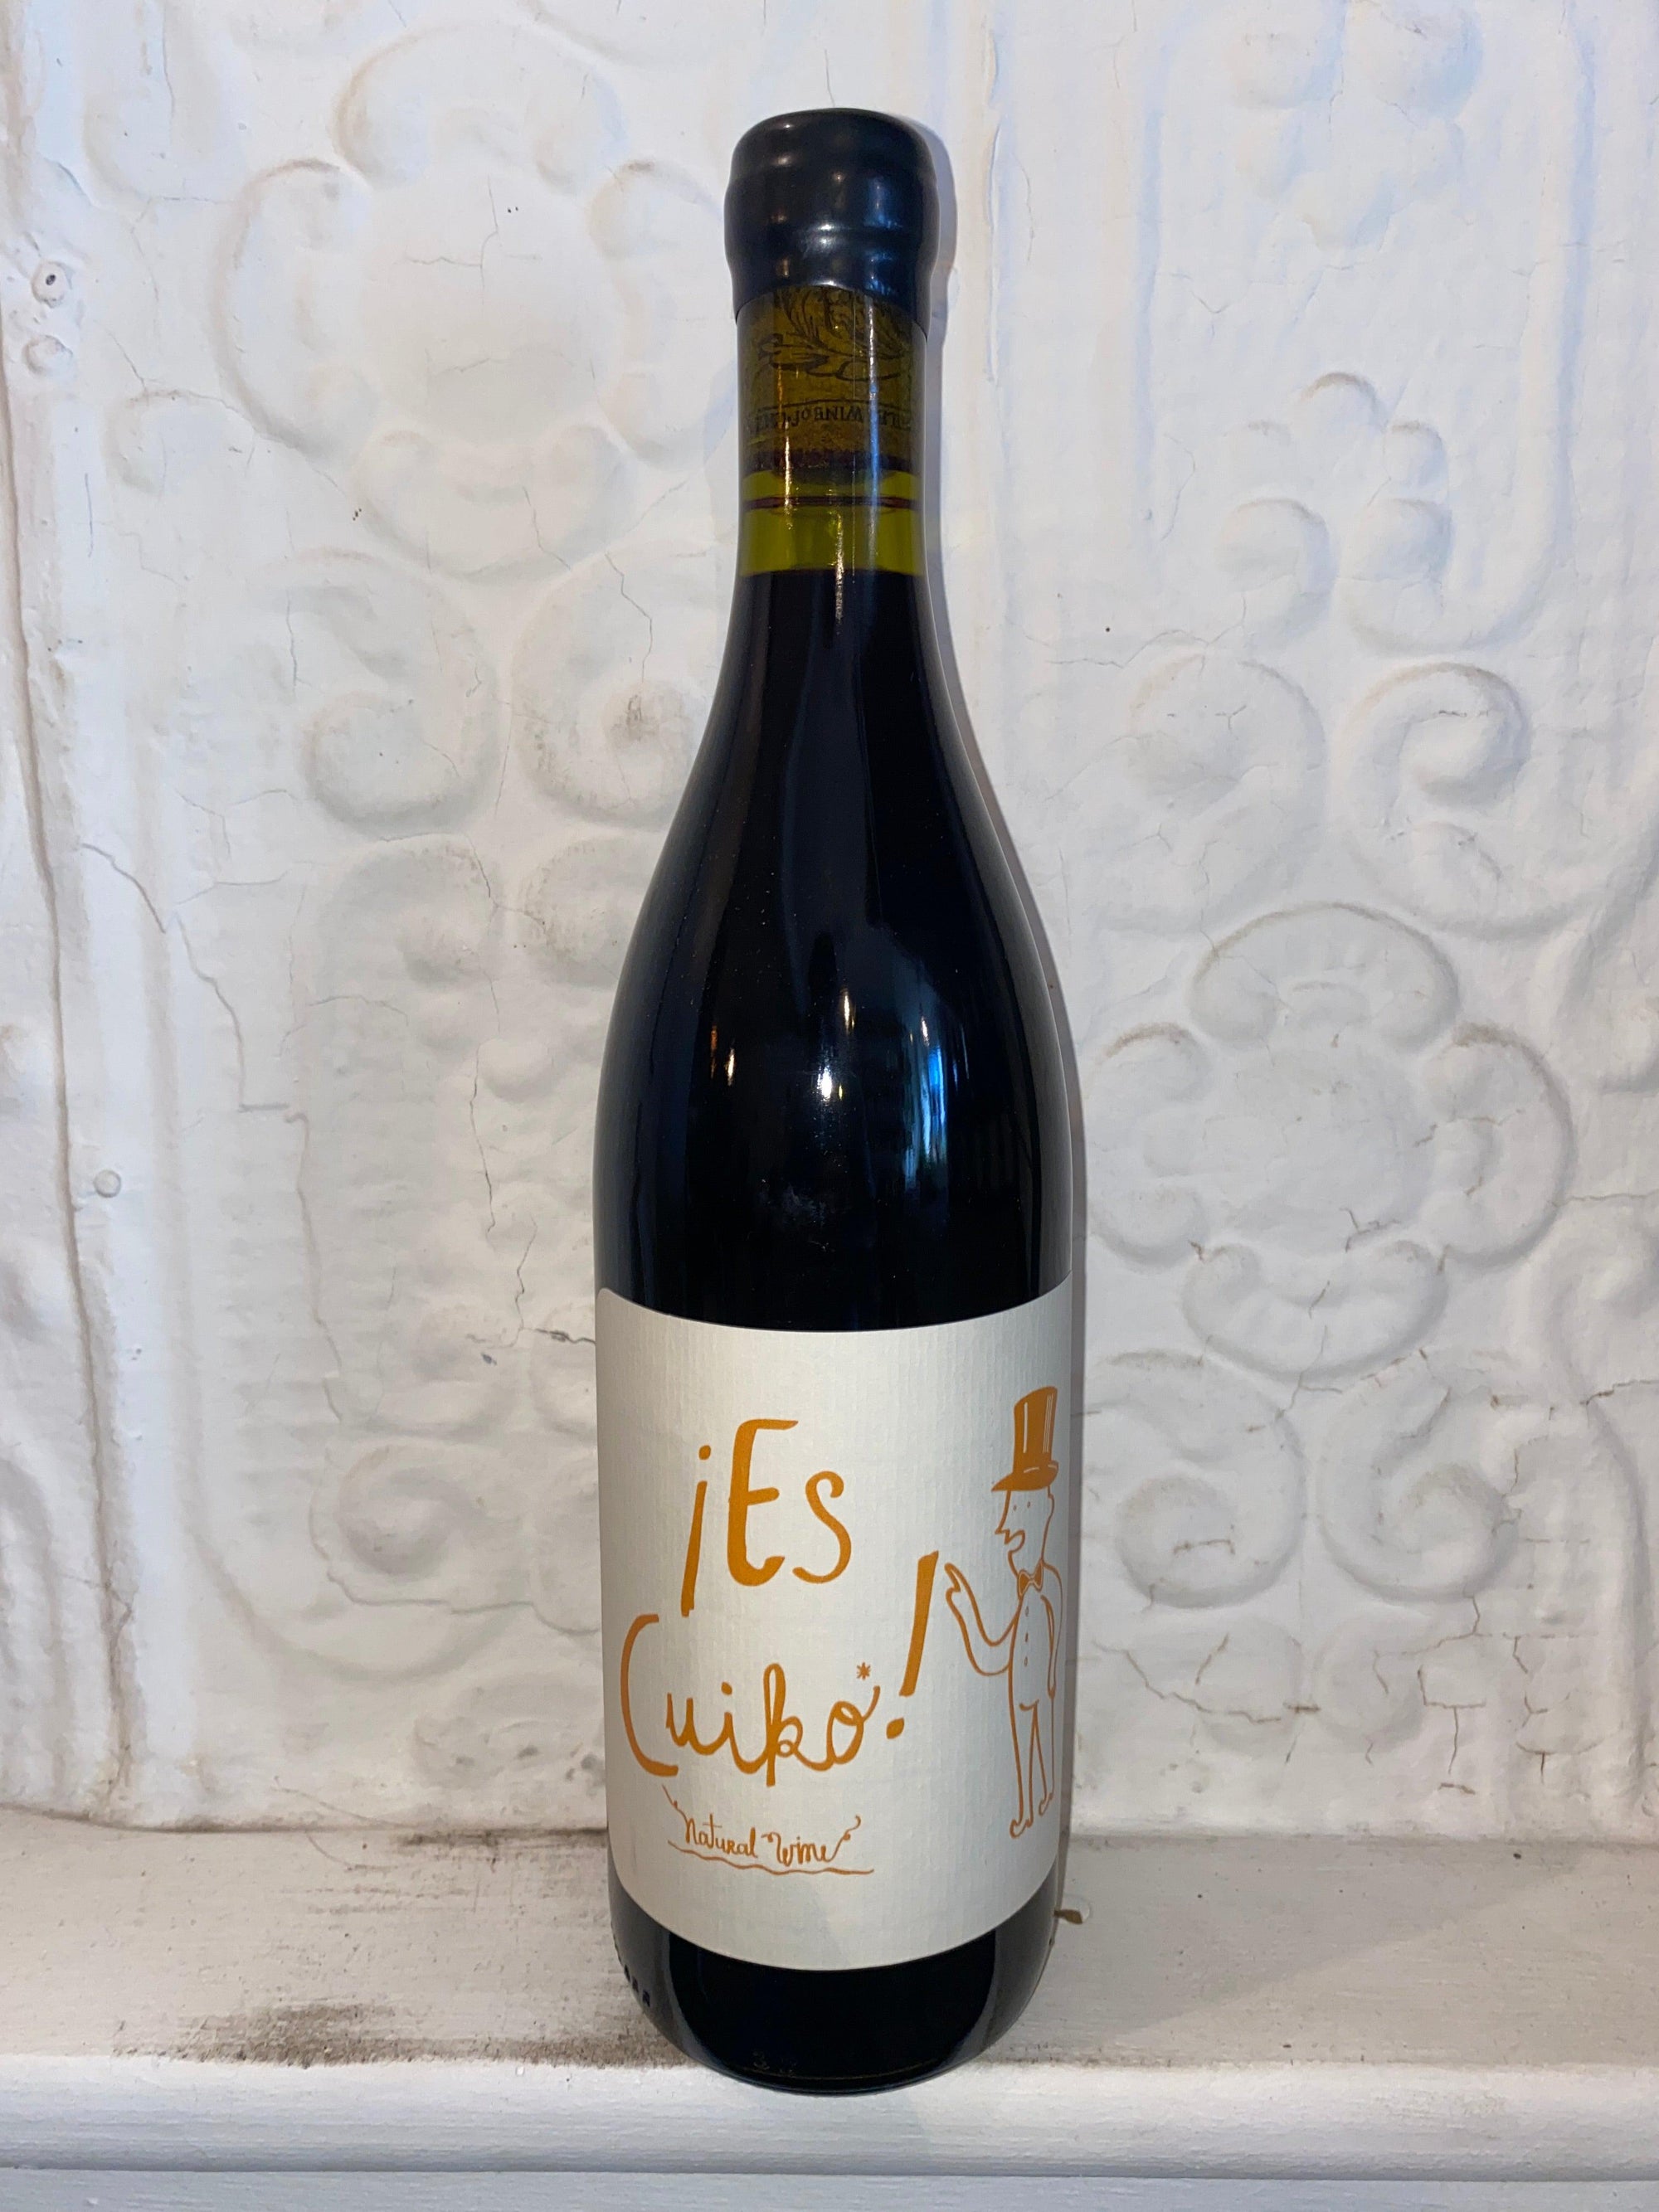 Es Cuiko! Cabernet Sauvignon, Vina Echeverria 2020 (Curico Valley, Chile)-Wine-Bibber & Bell